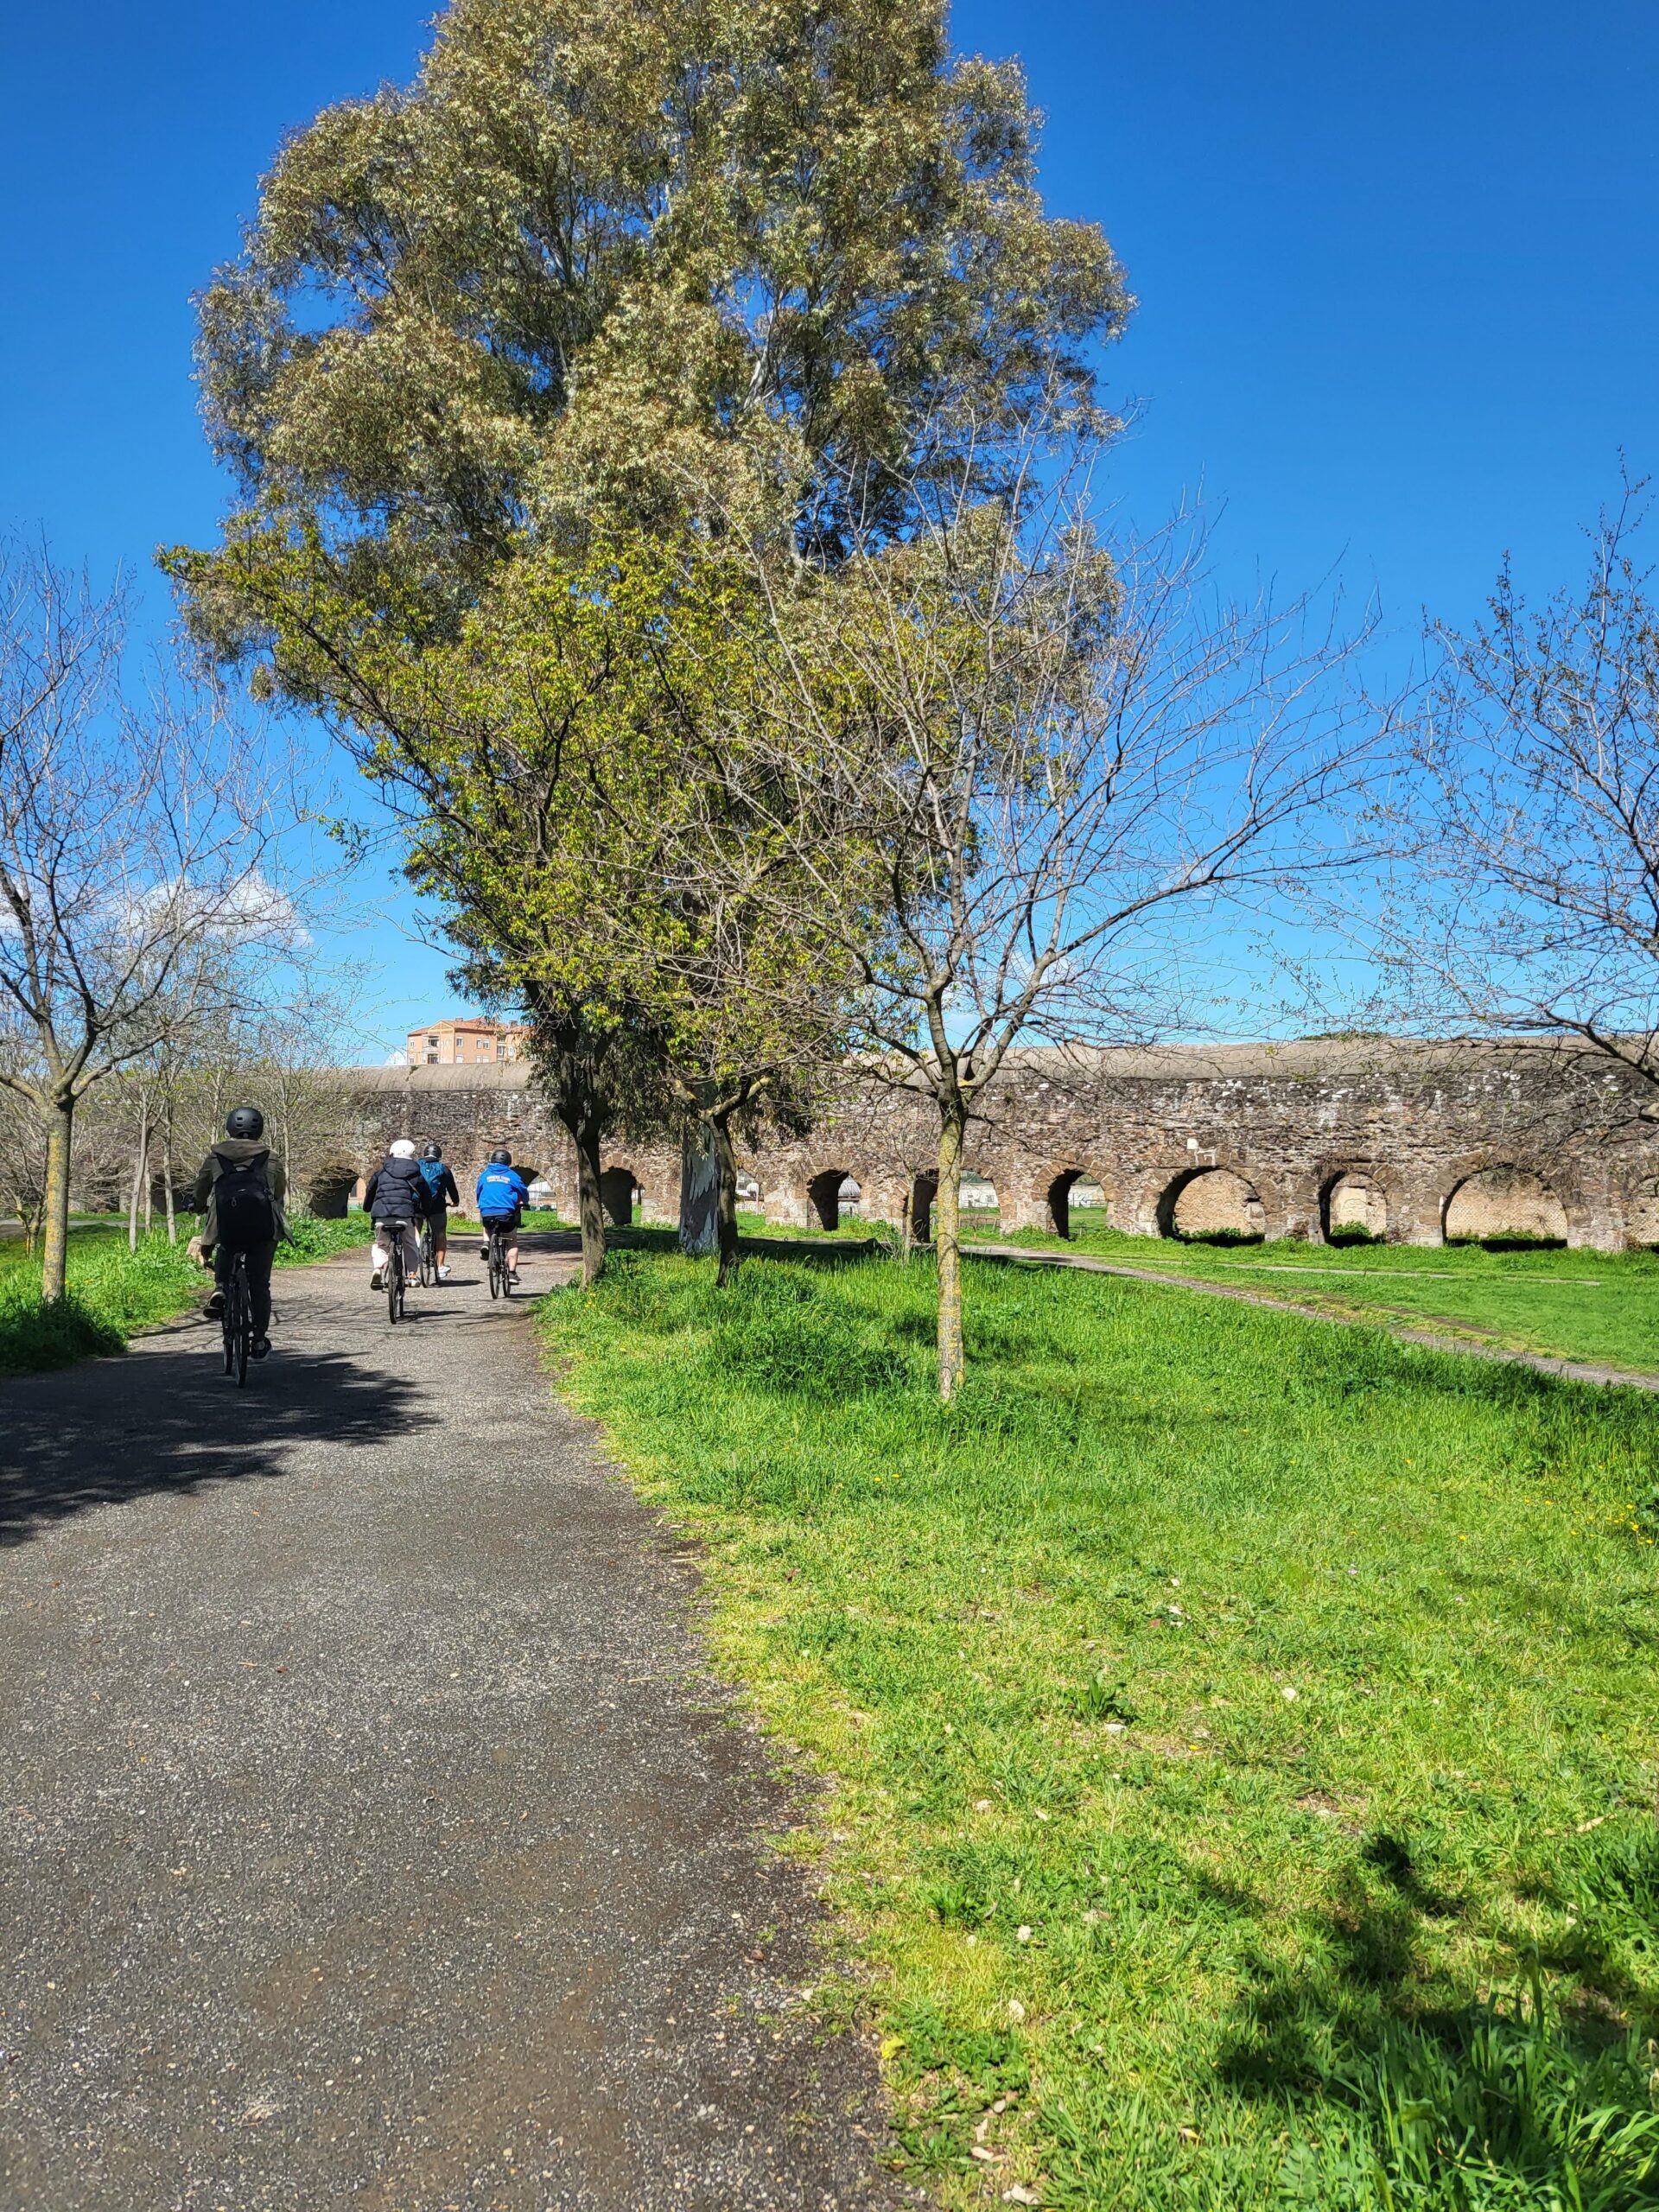 Foto de pessoas pedalando em um caminho de asfalto, do lado direito é possível ver árvores e um gramado verde, a frente é um antigo aqueduto.